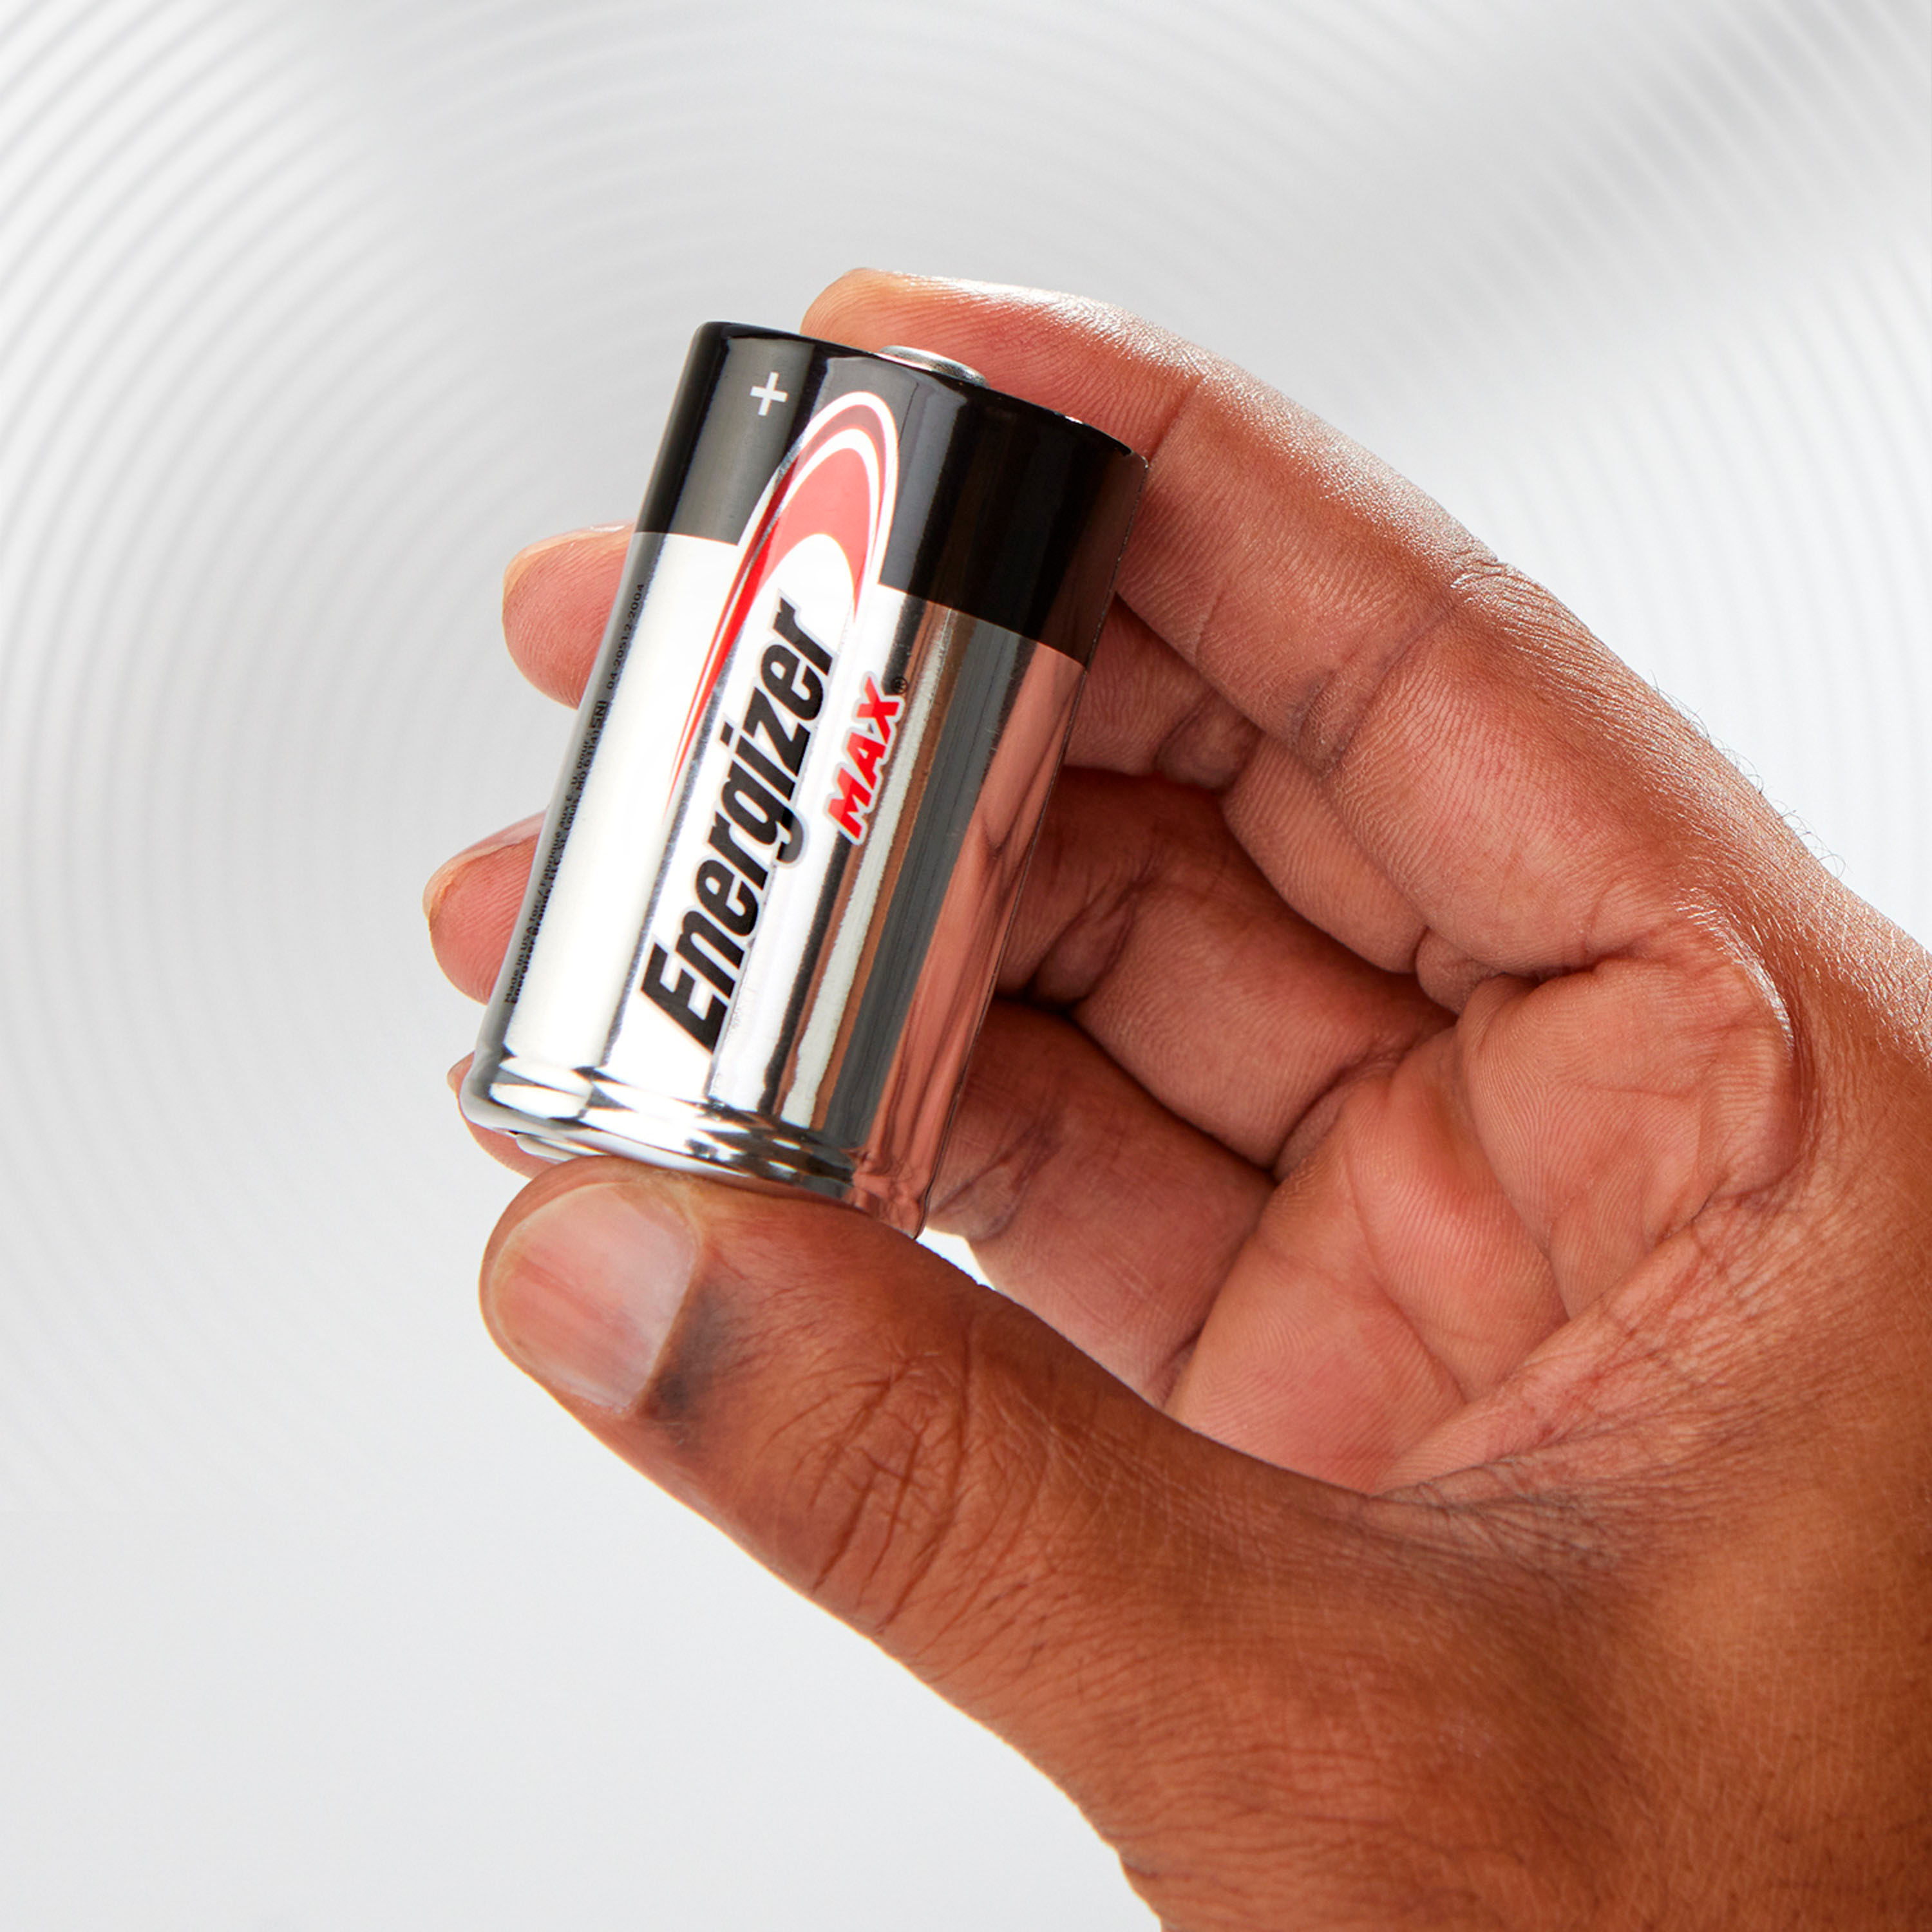 Energizer MAX 9V Batteries (1 Pack), 9 Volt Alkaline Batteries 